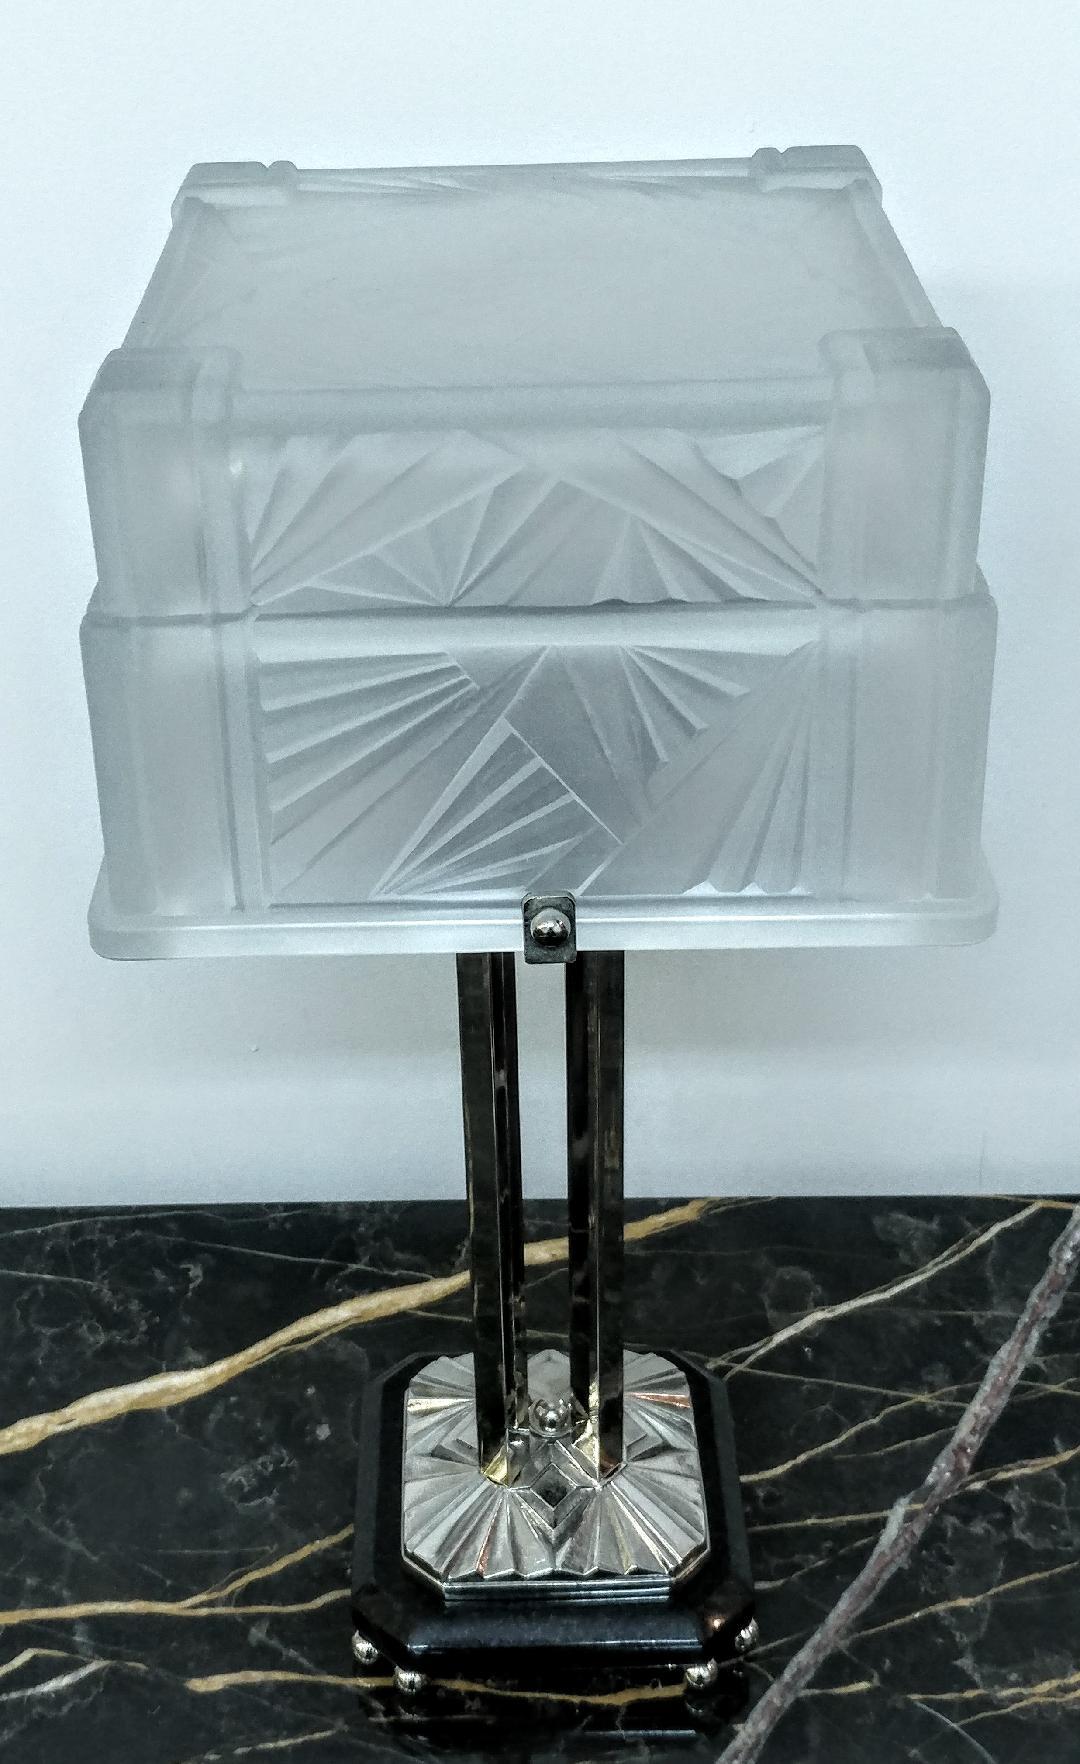 Une étonnante paire de lampes de table Art déco françaises a été créée par E.J.G. L'abat-jour carré en verre est composé de deux niveaux. Elle est rehaussée par des motifs géométriques typiques de l'Art déco français. En verre clair givré avec des